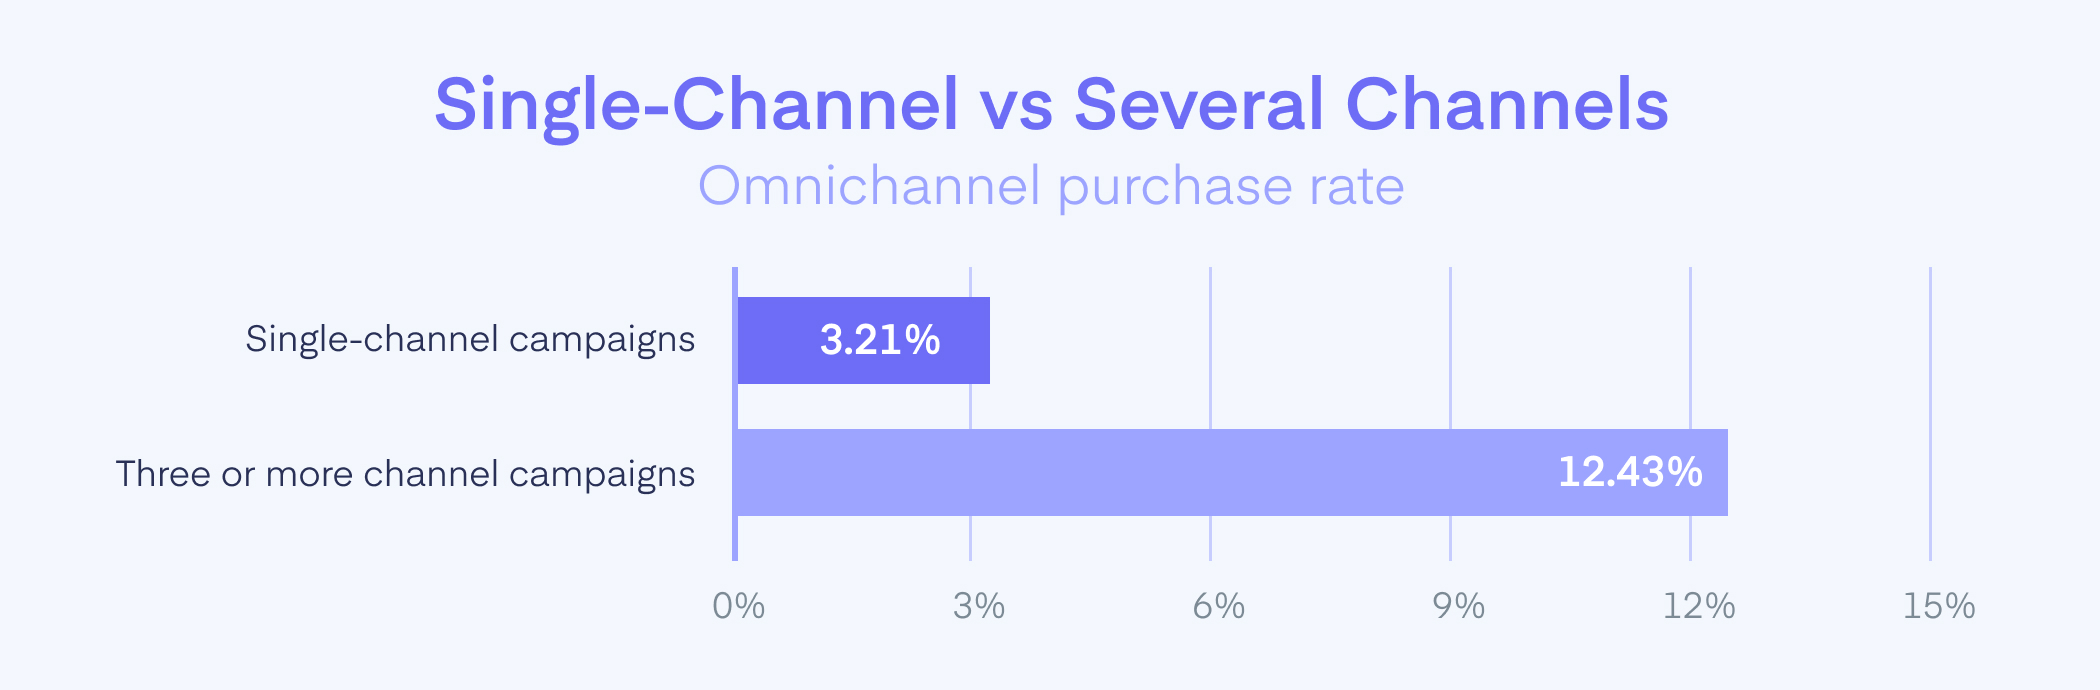 Single-Channel vs Omnichannel Purchase Rate